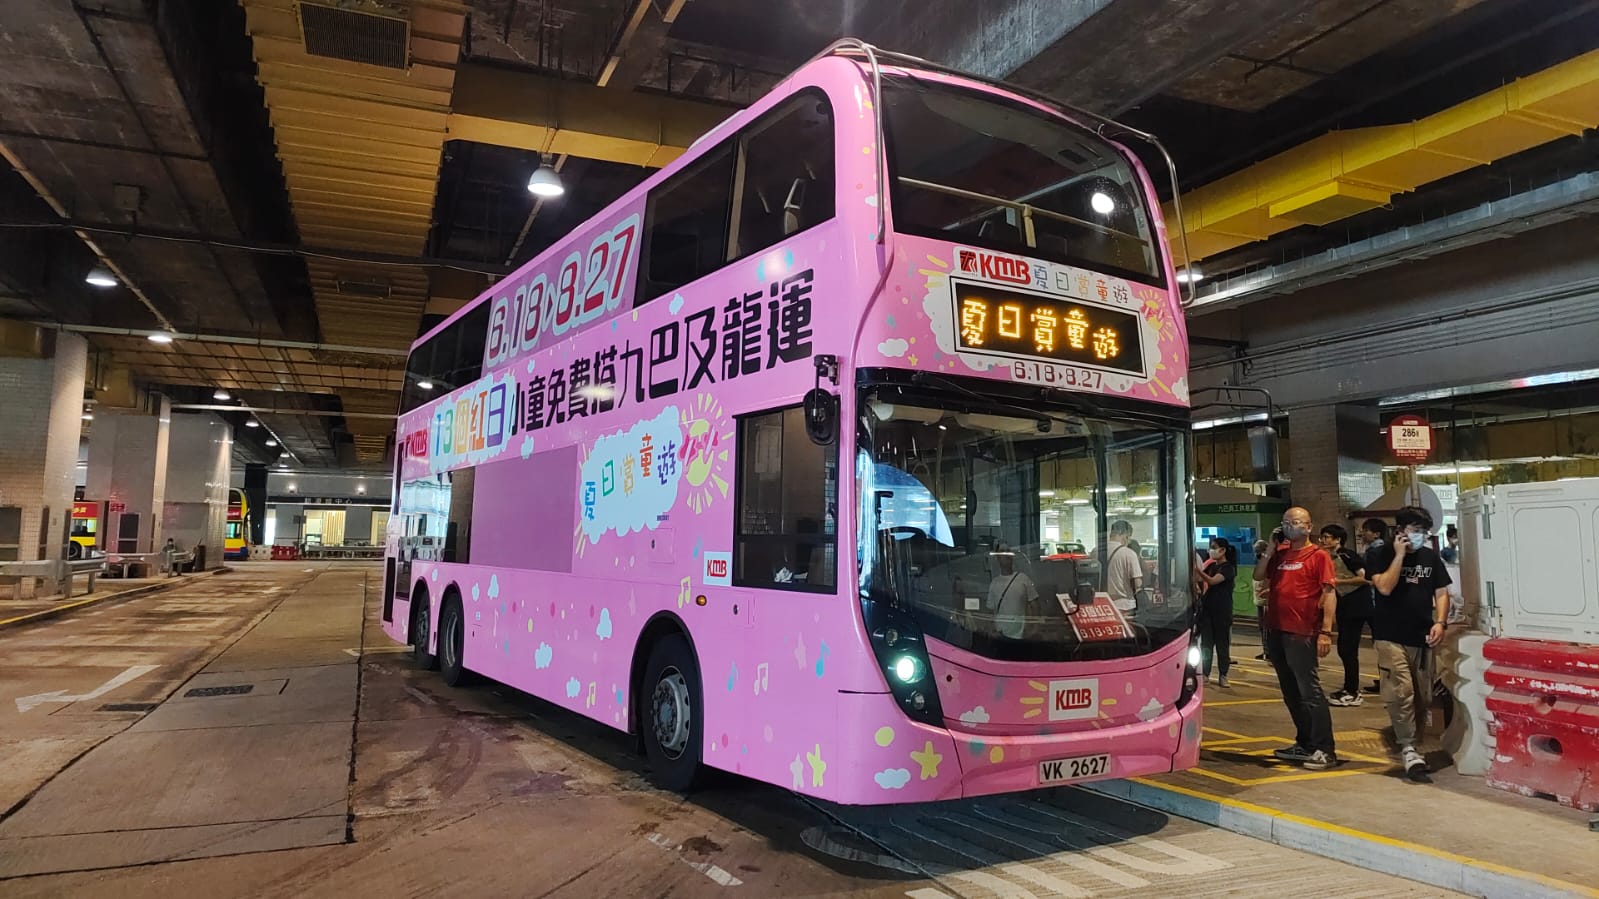 悠]・九龍巴士(バス)(1933)有限公司於1949年引入全港首部雙層巴士(バス 